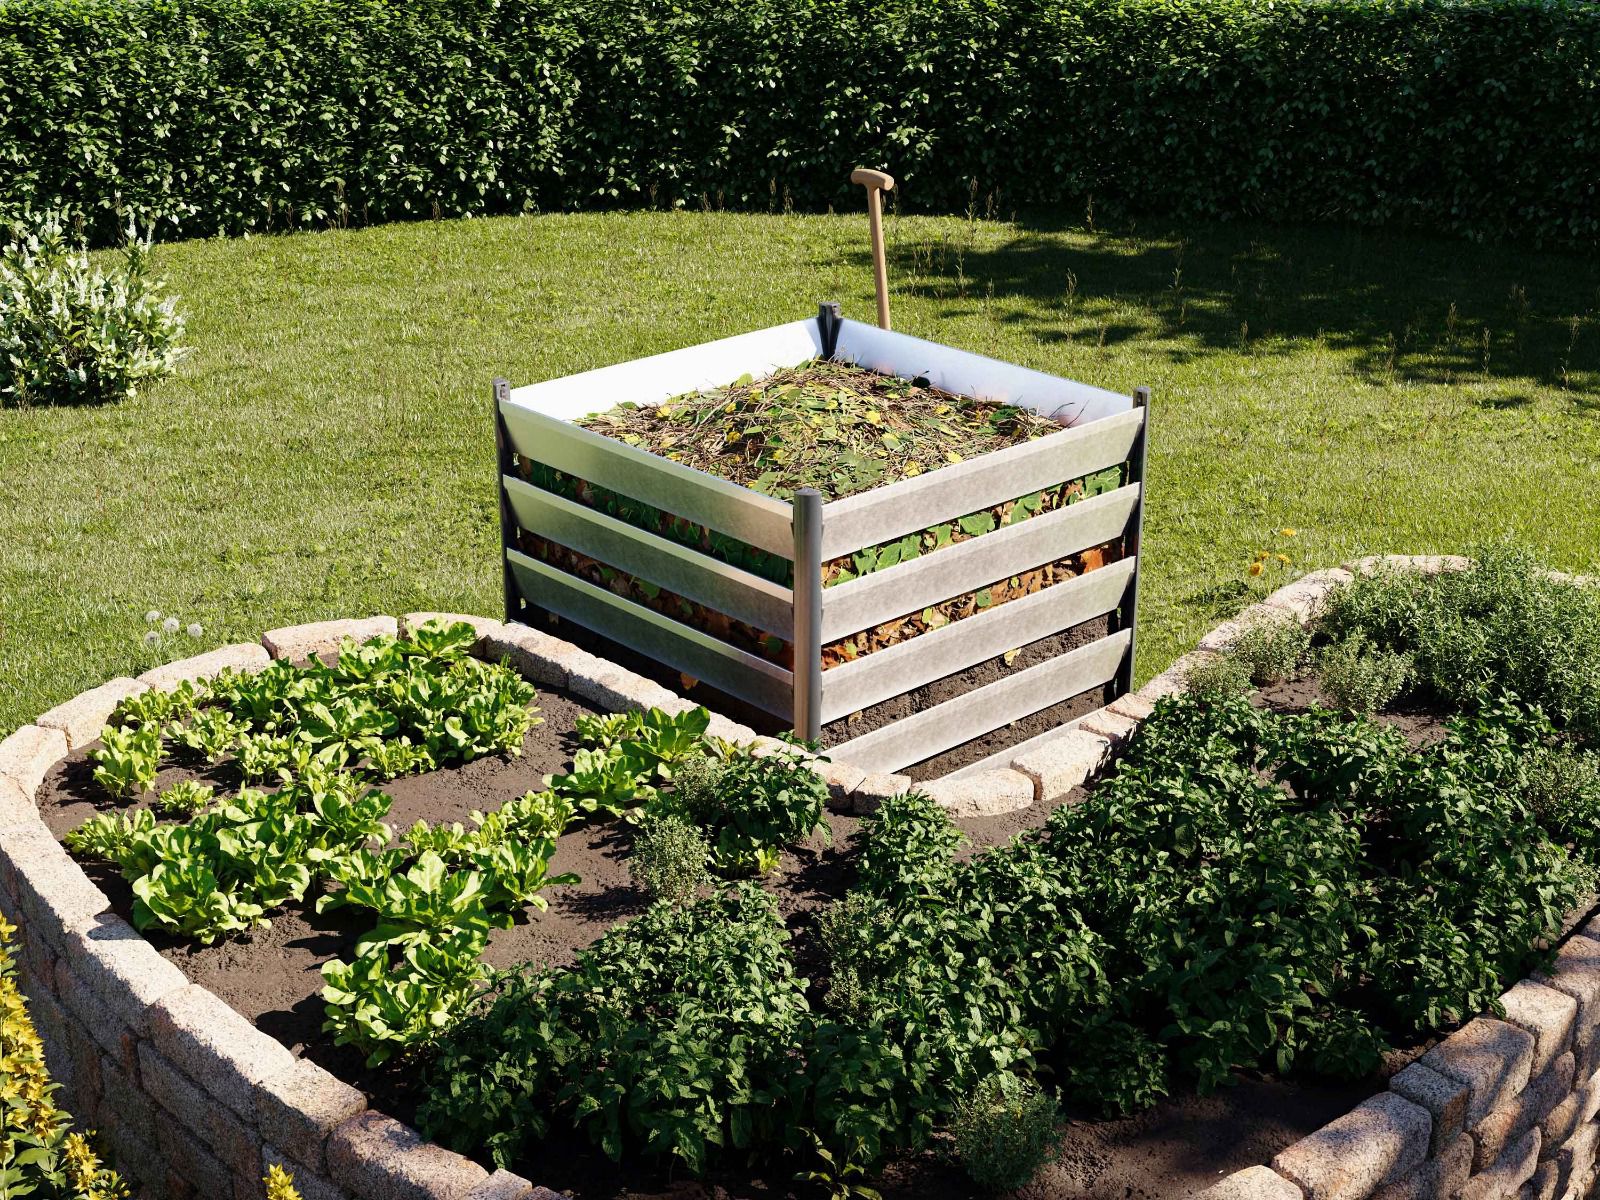 Entdecken Sie den Komposter aus Aluminium Natur, 110x110 cm, langlebig, stabil und perfekt für eine effiziente Gartenkompostierung.